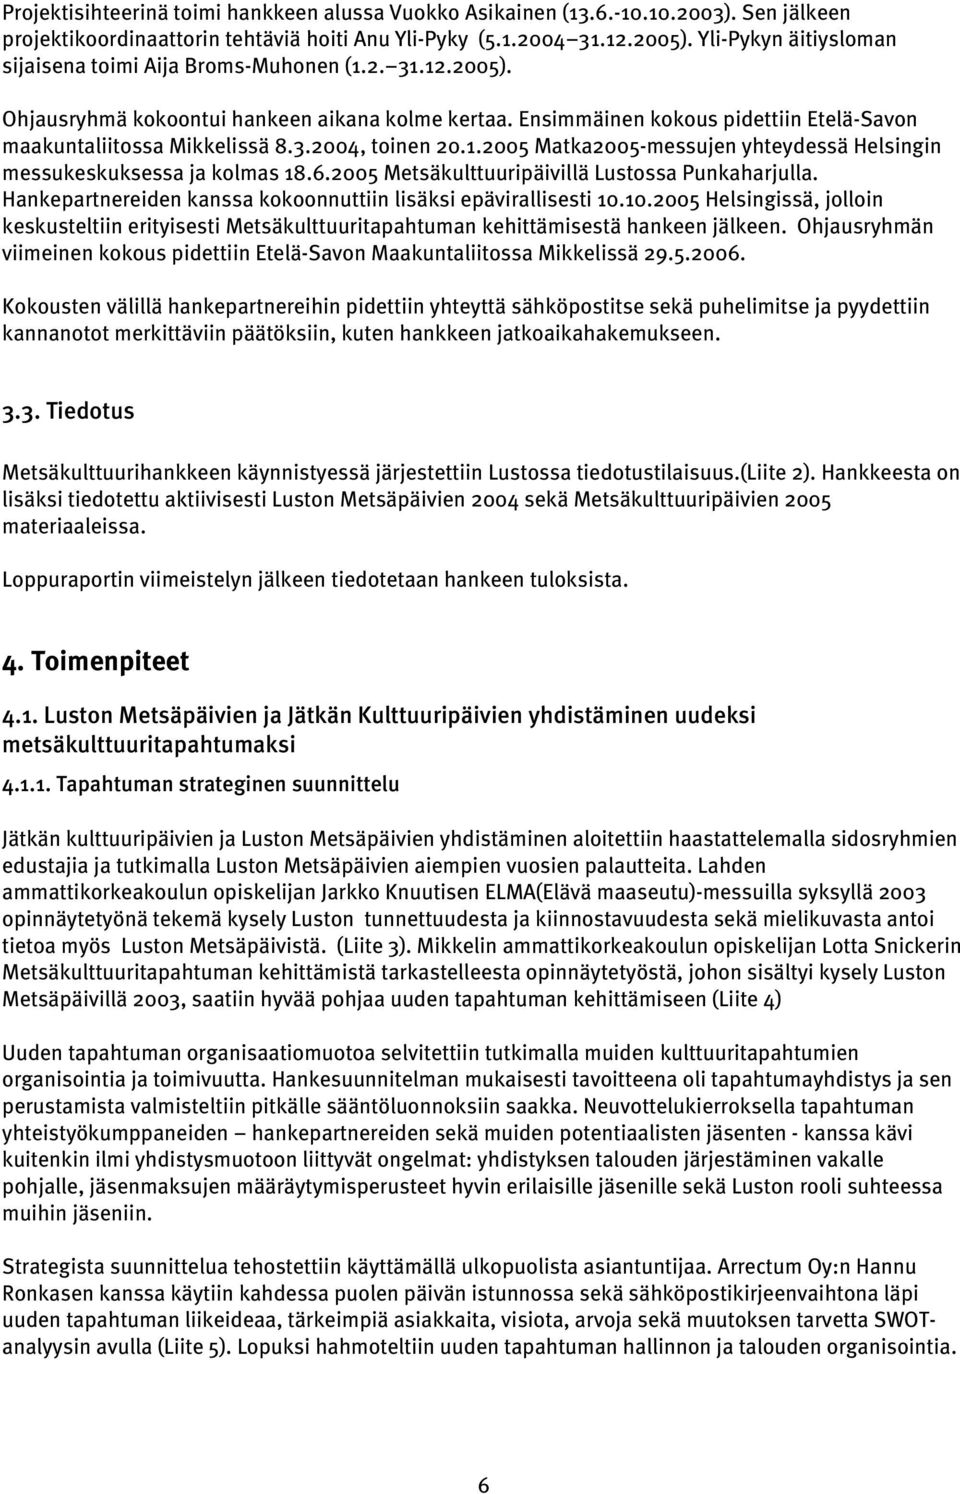 1.2005 Matka2005-messujen yhteydessä Helsingin messukeskuksessa ja kolmas 18.6.2005 Metsäkulttuuripäivillä Lustossa Punkaharjulla. Hankepartnereiden kanssa kokoonnuttiin lisäksi epävirallisesti 10.